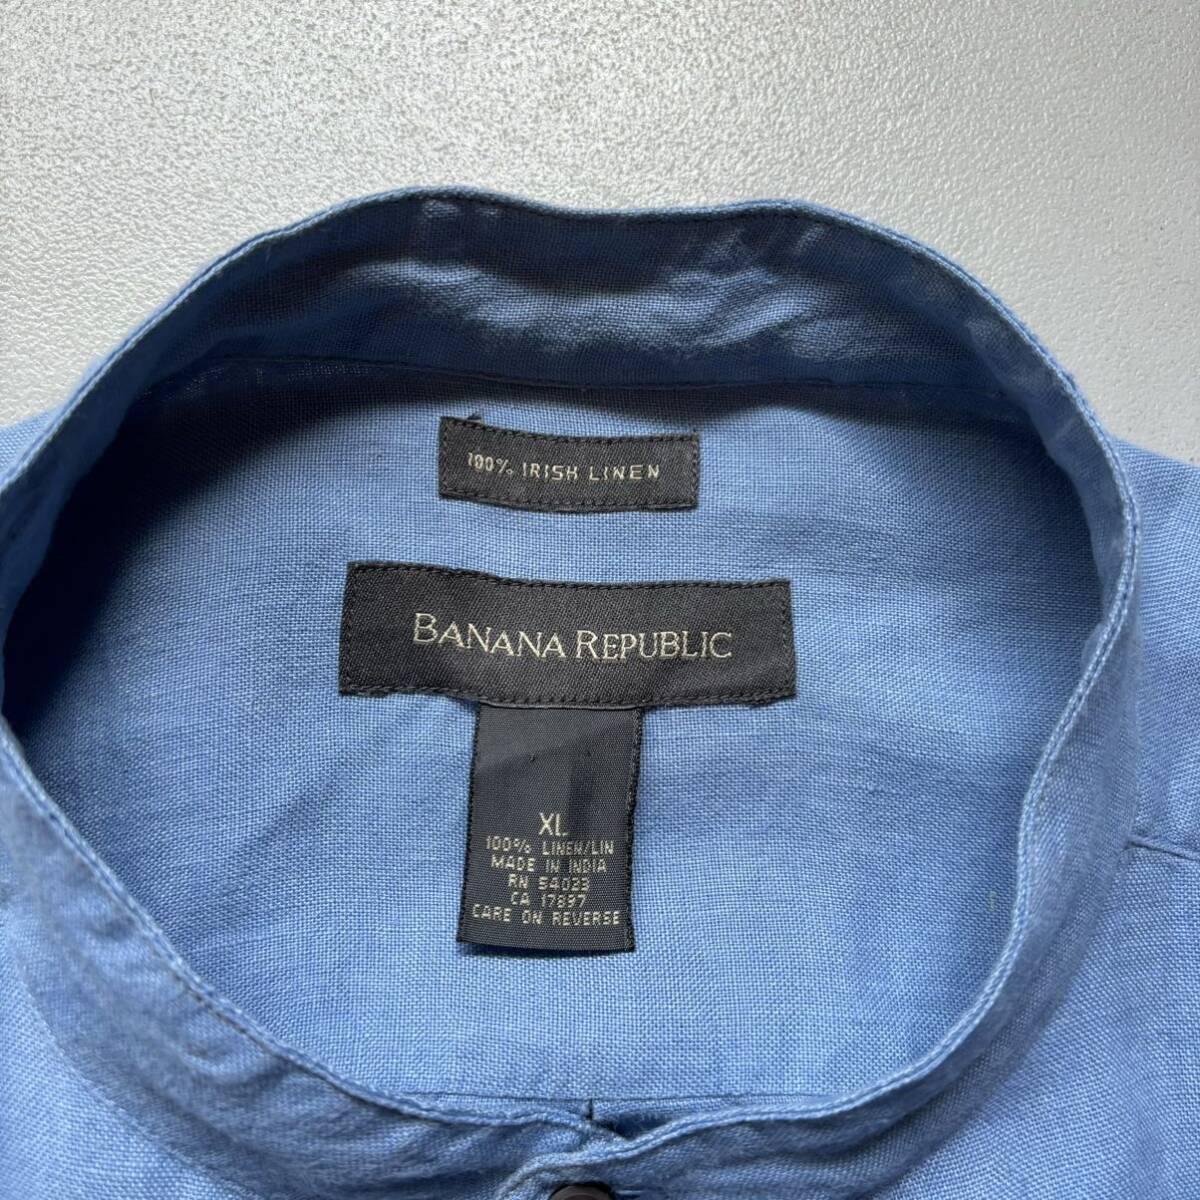 Banana Republic Irish linen L/S shirt “size XL” バナナリパブリック アイリッシュリネンシャツ 長袖シャツ